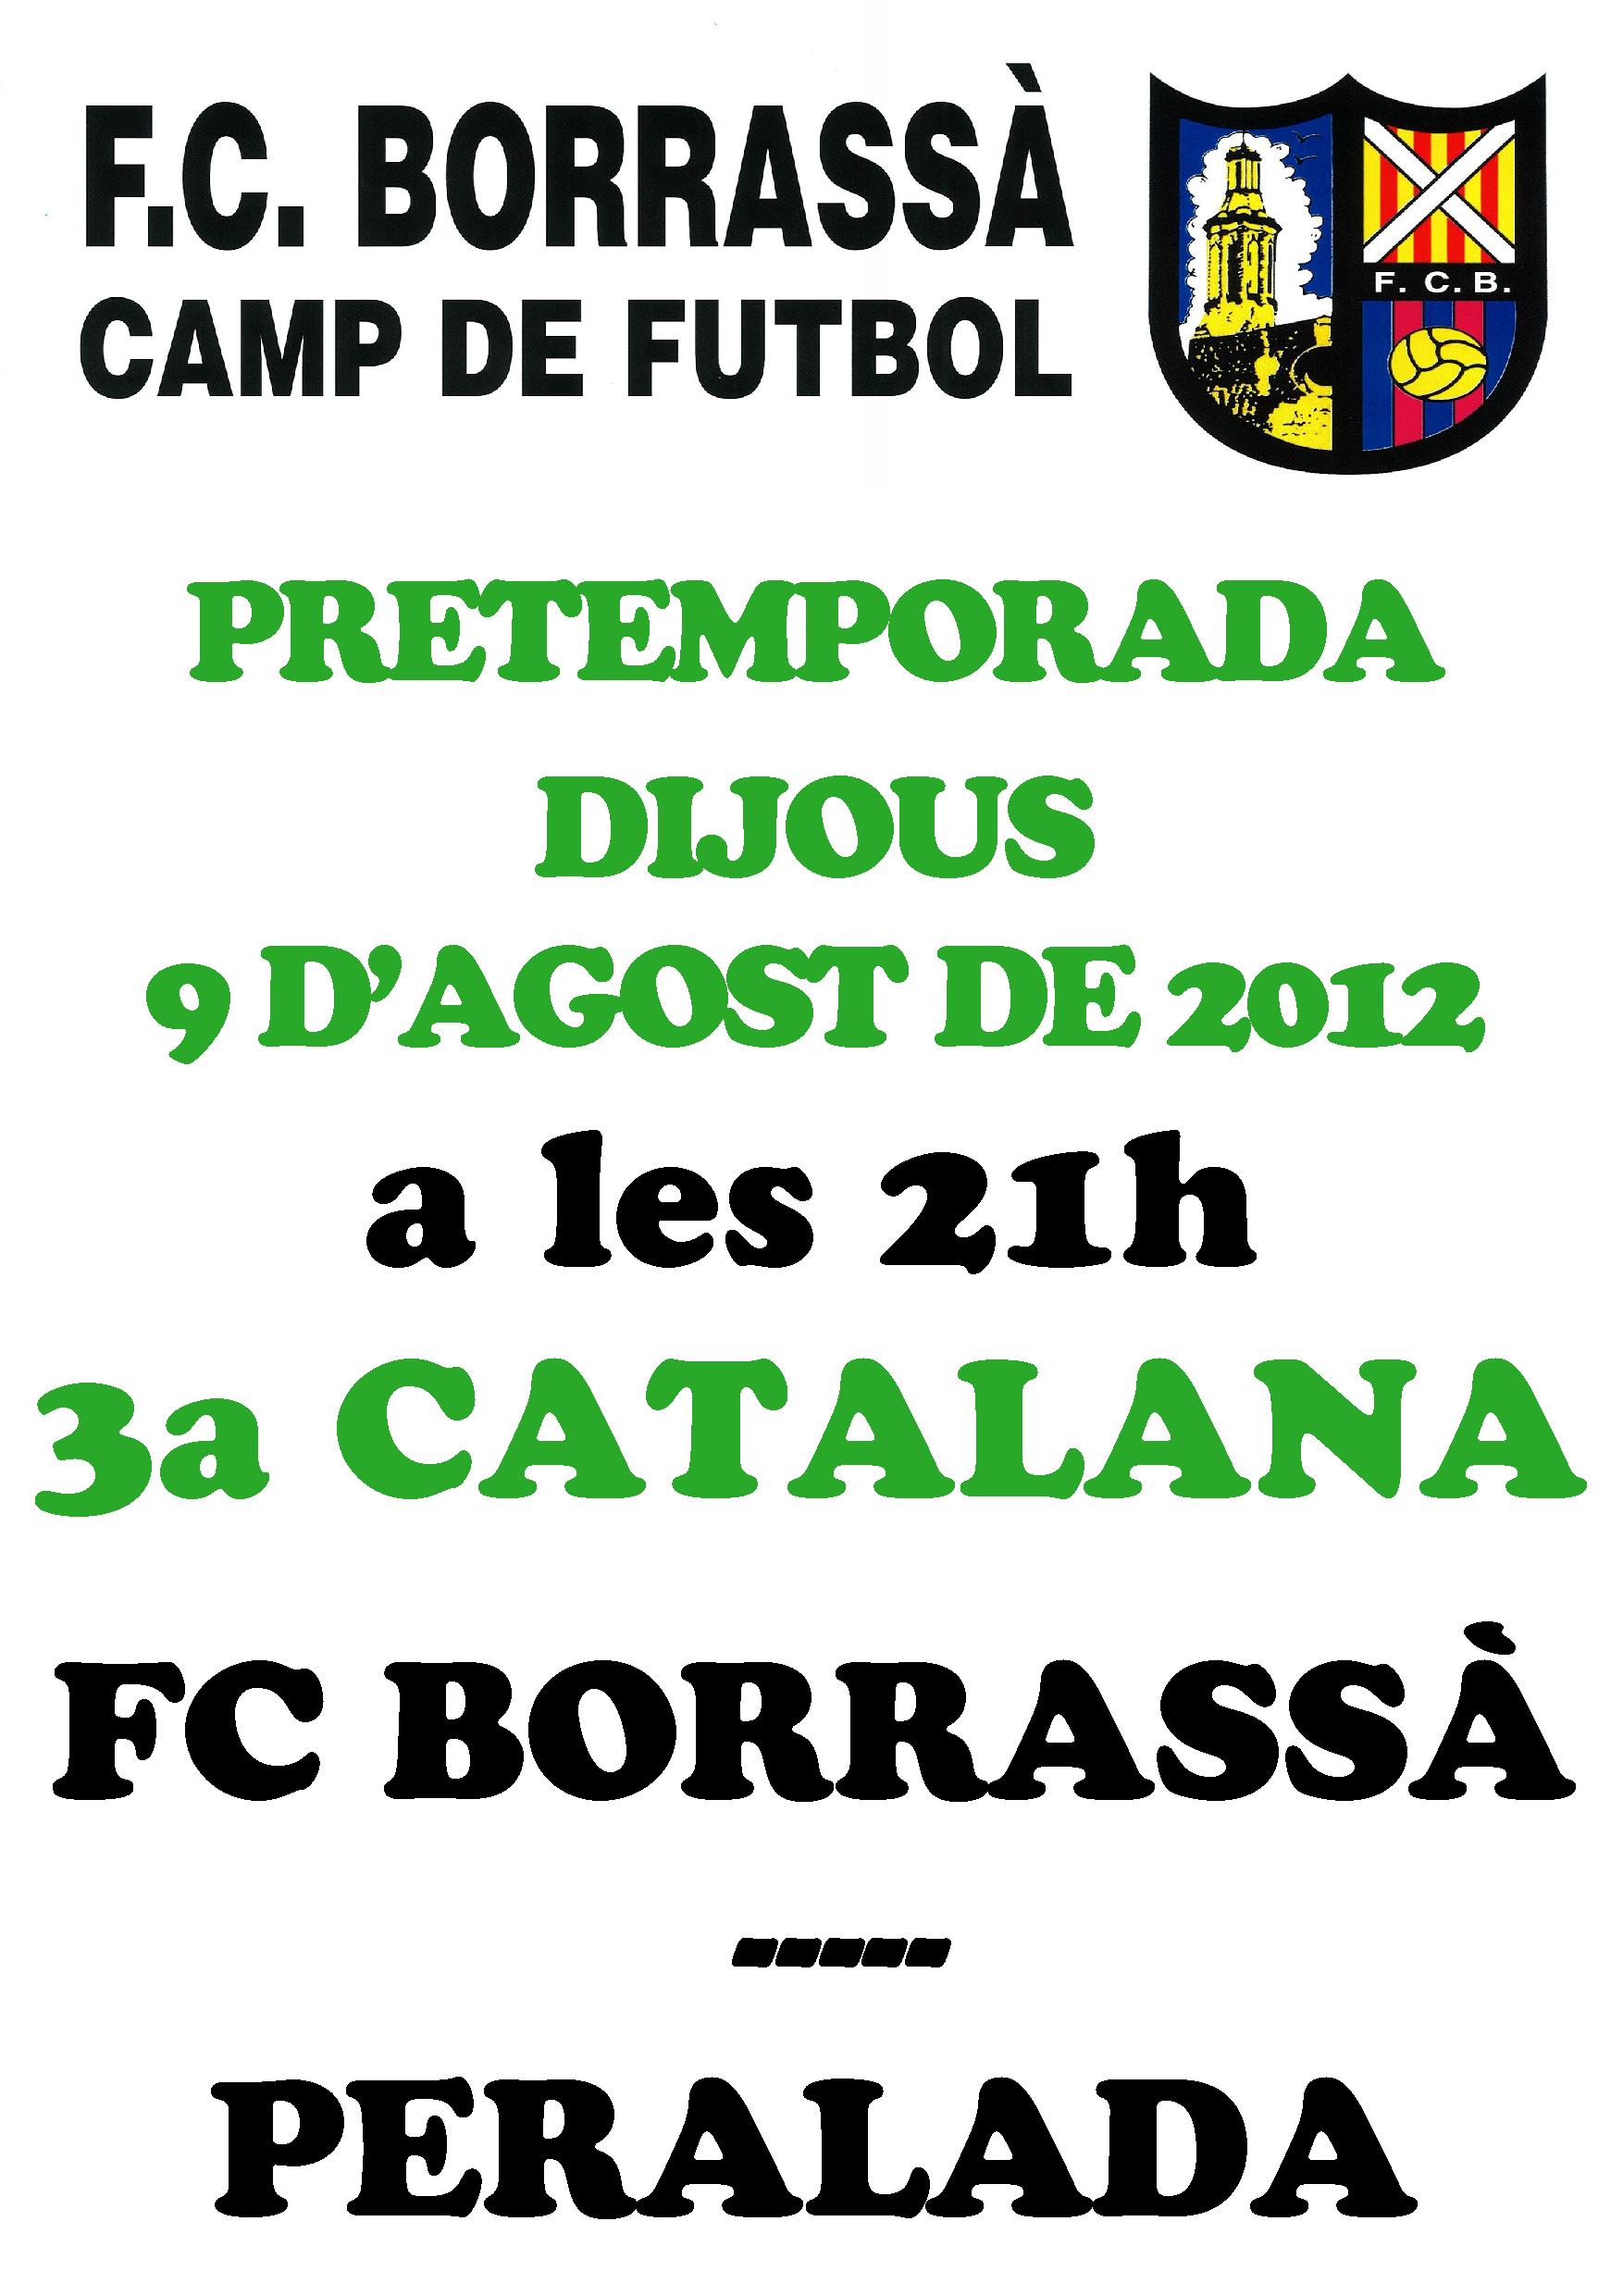 Aquest dijous a les 9 del vespre,  l'equip del FC Borrassà, que milita a 3a Catalana, jugarà un partit de pretemporada contra el Peralada en el Camp d'Esports Municipal.
